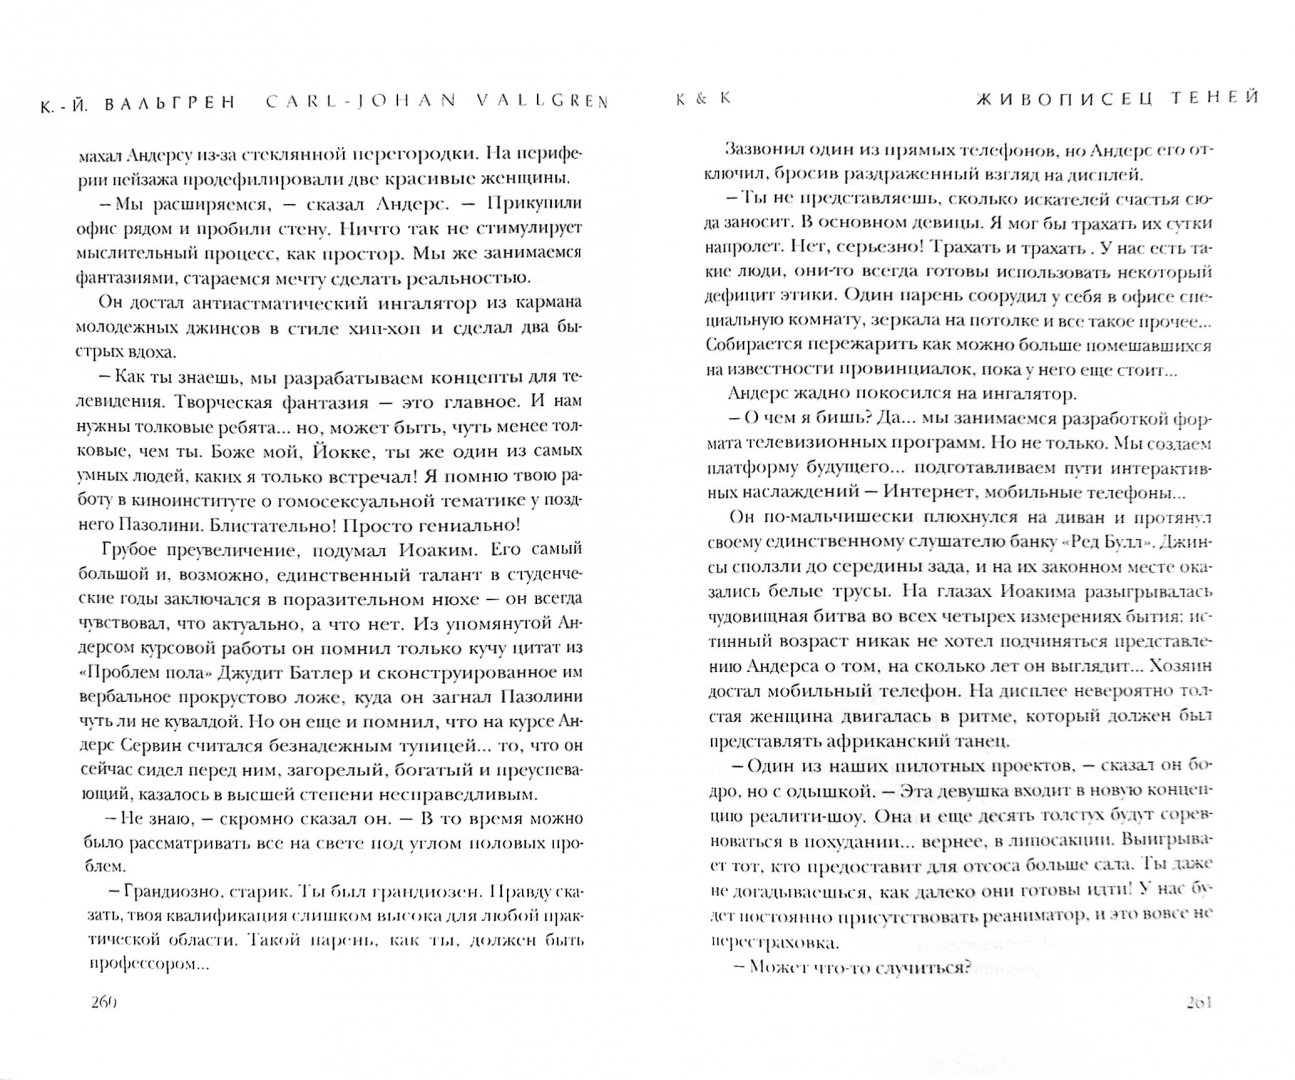 Иллюстрация 1 из 2 для Живописец теней - Карл-Йоганн Вальгрен | Лабиринт - книги. Источник: Лабиринт